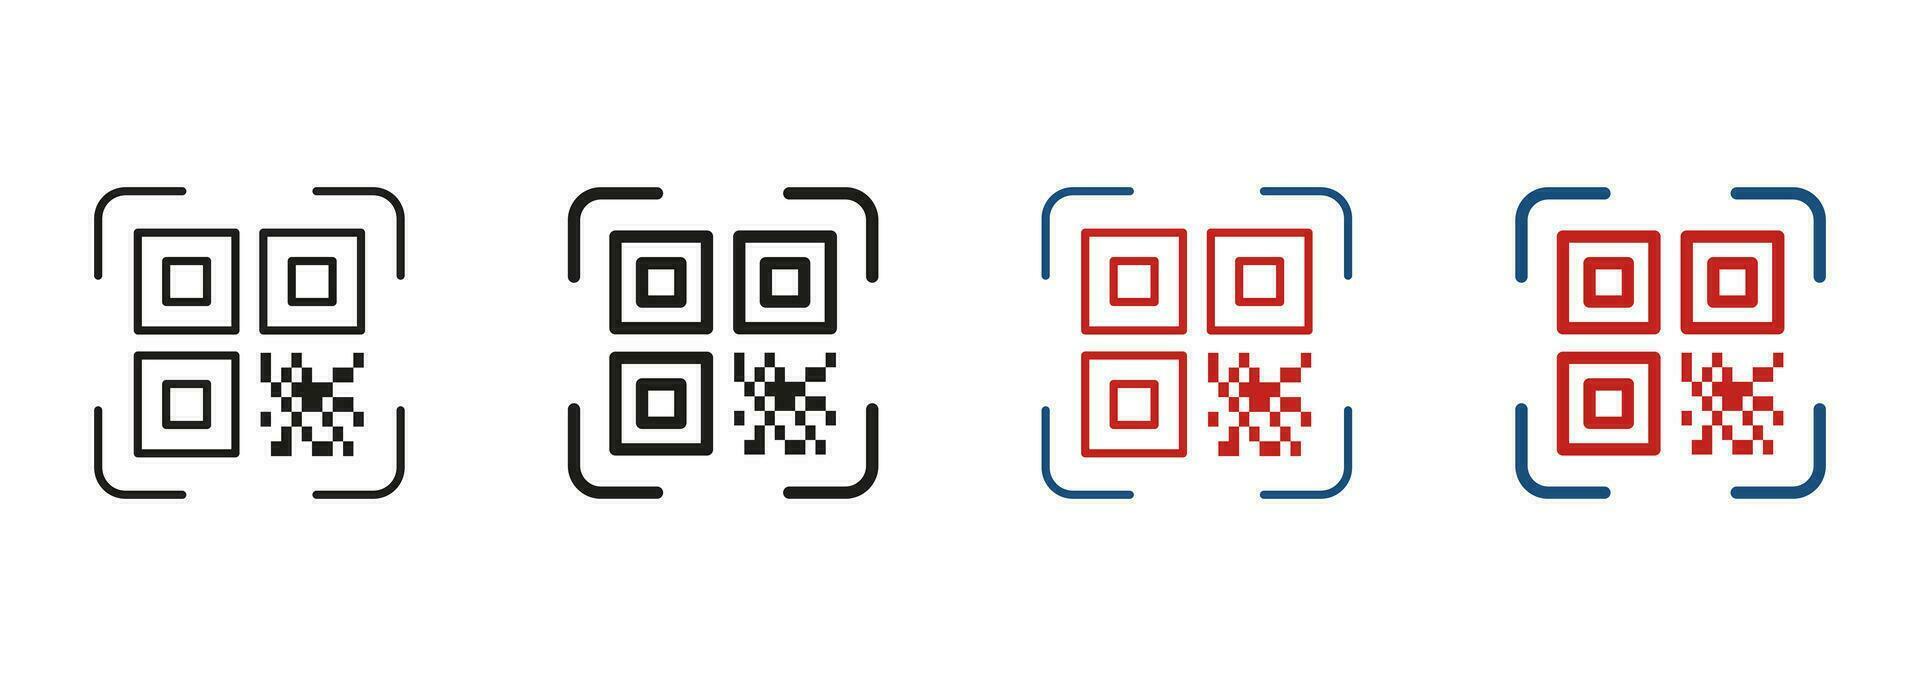 qr código escáner línea y silueta icono colocar. instrucción a obtener información tecnología solicitud para identificación producto símbolo recopilación. escanear Código QR pictograma. aislado vector ilustración.